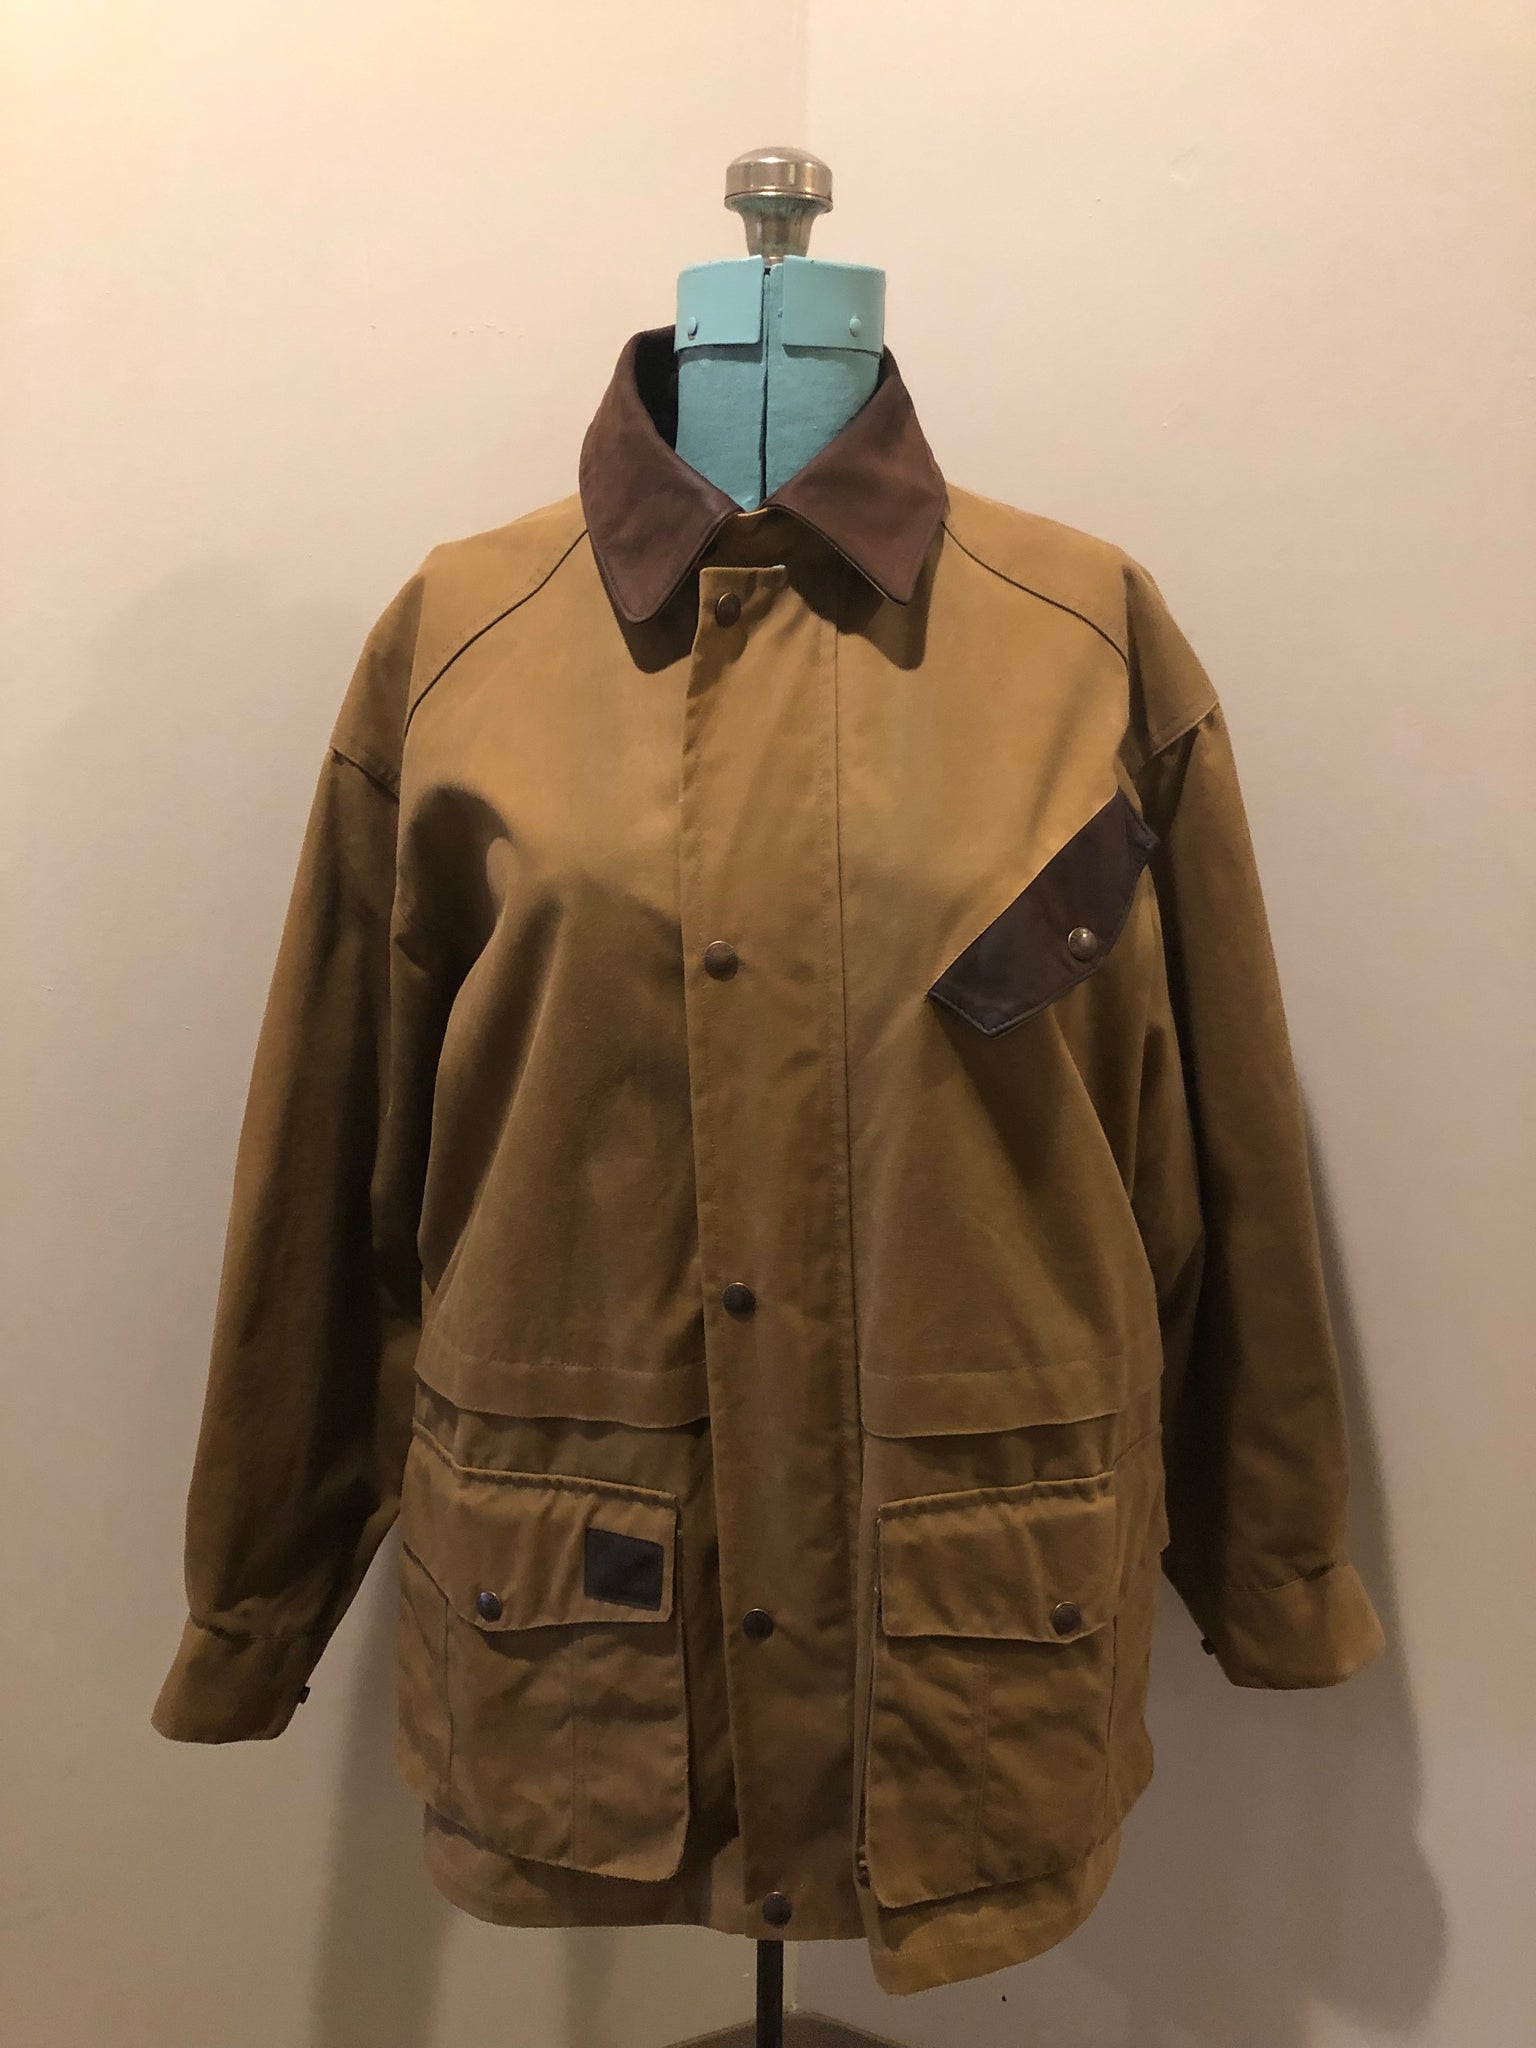 Vintage Australian Outback Jacket, Made in Canada SOLD – KingsPIER vintage